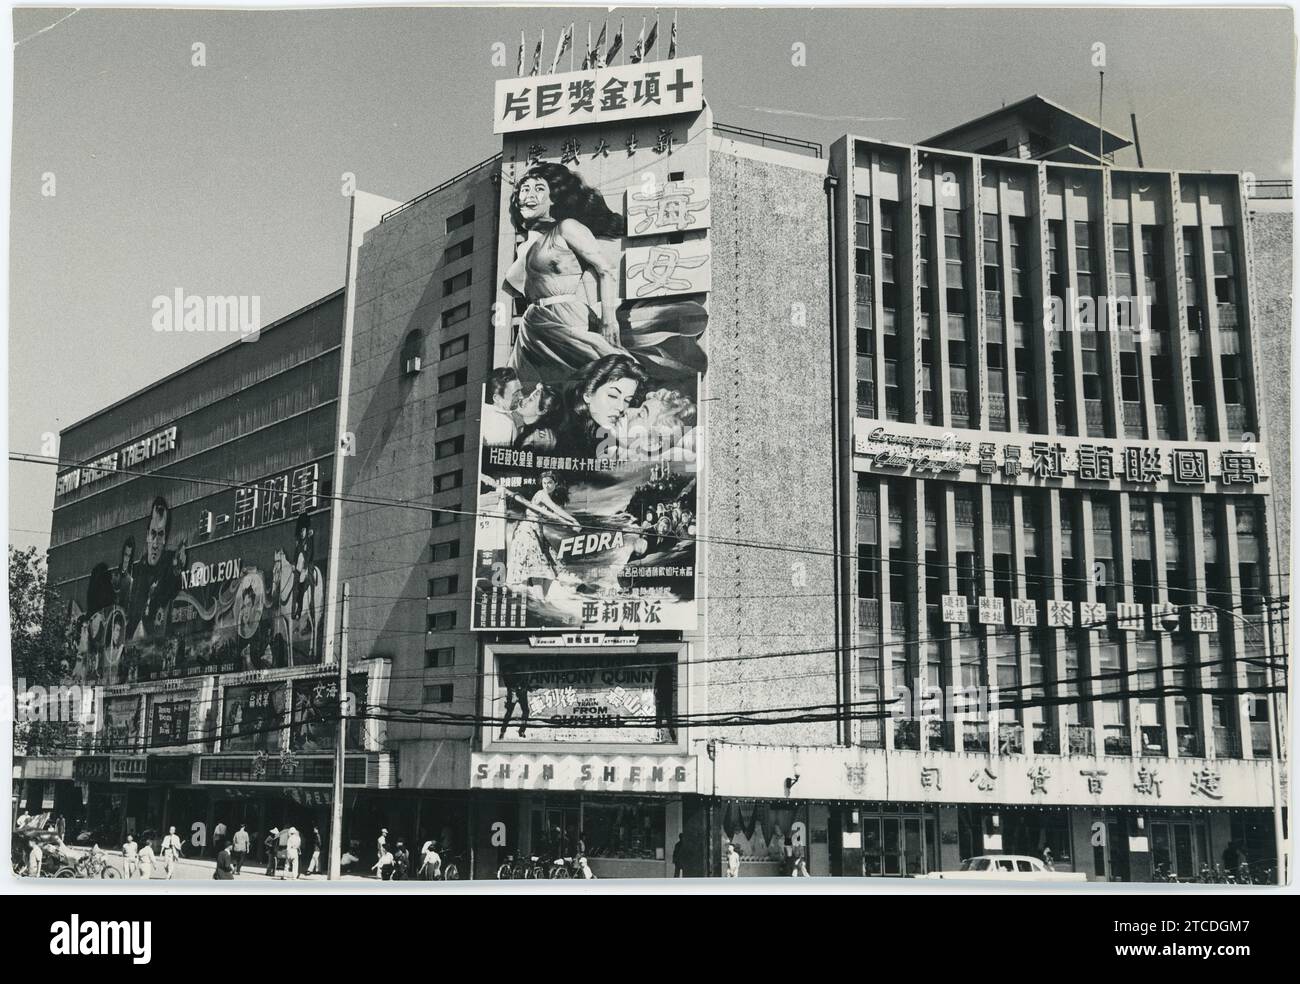 Taipei (Taiwan), novembre 1959. Poster per il film spagnolo 'Fedra' Sulla facciata principale del cinema Shin Shen. Crediti: Album / Archivo ABC Foto Stock